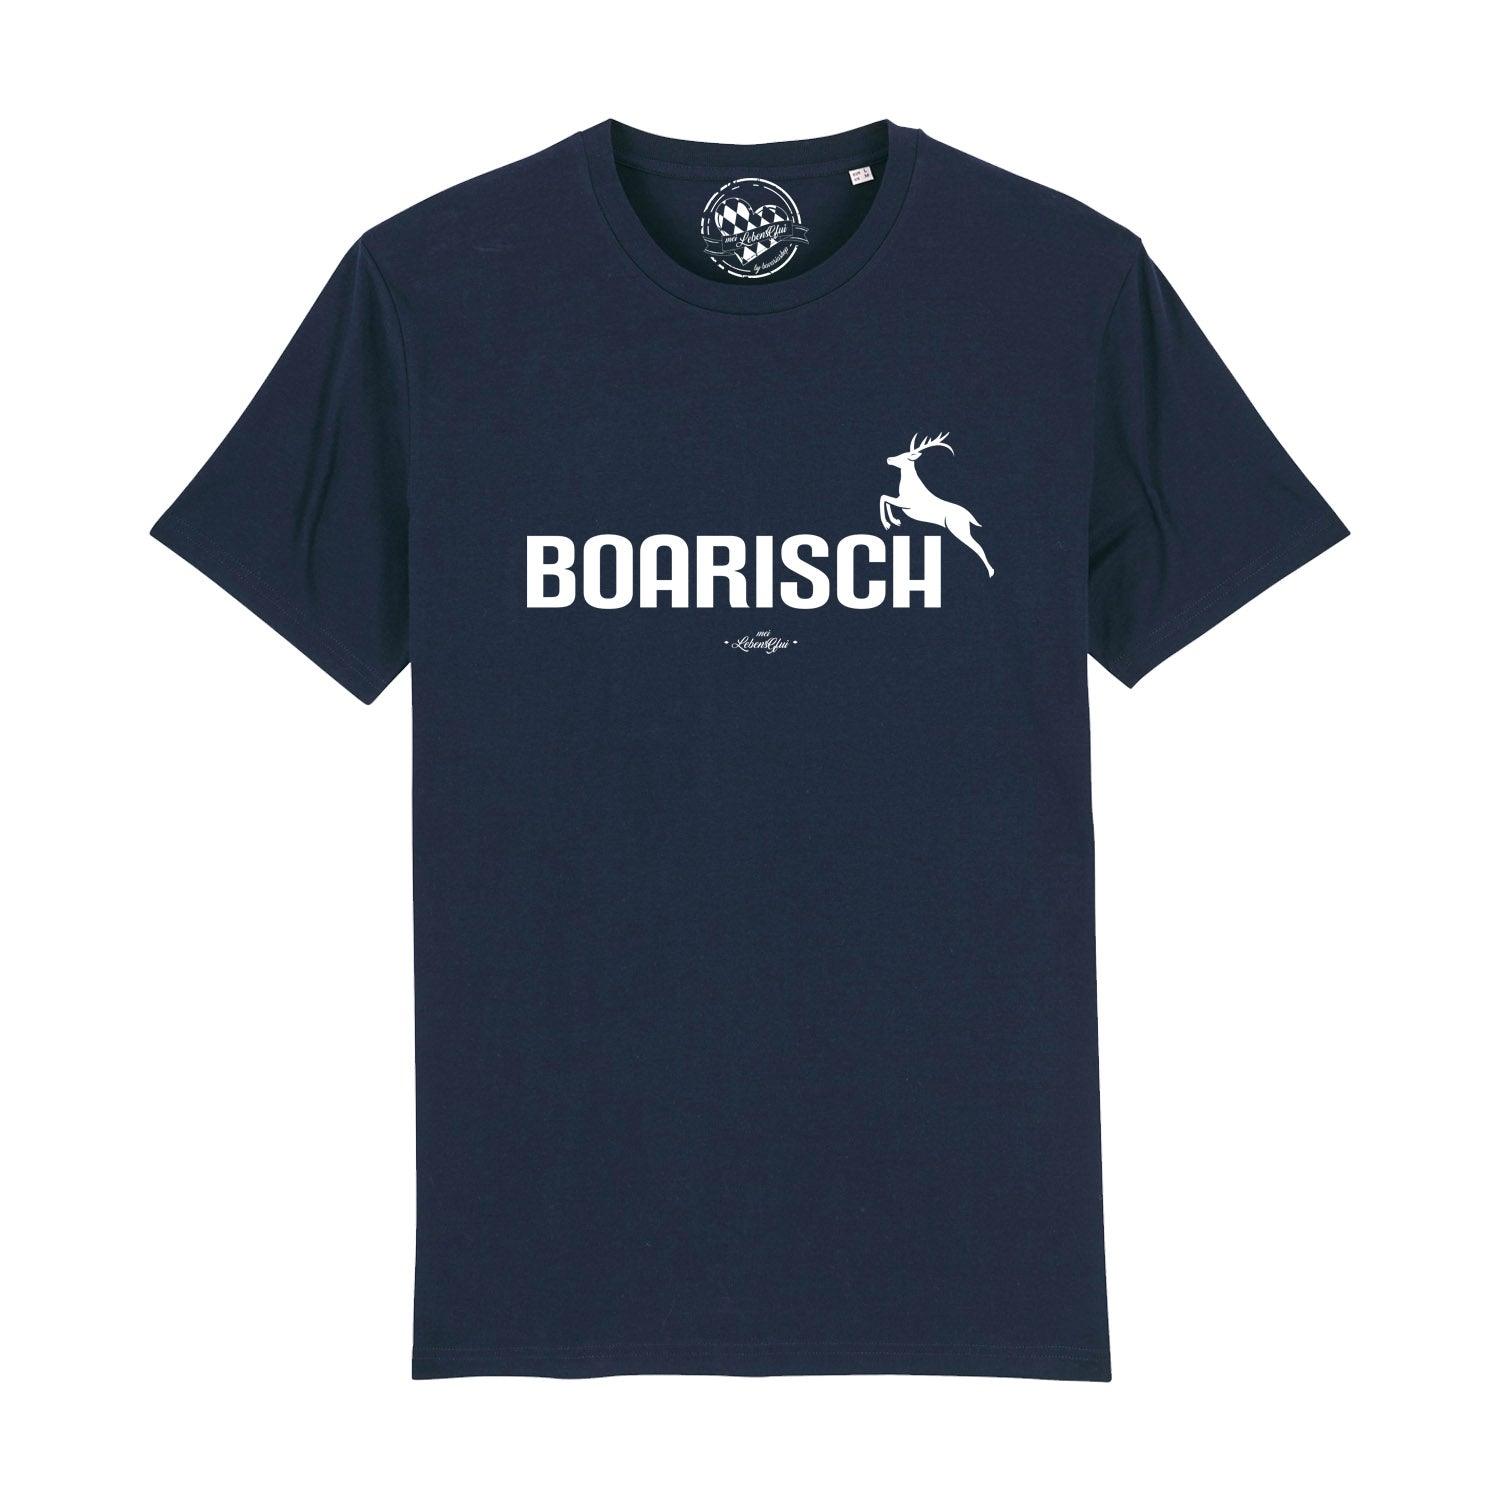 Herren T-Shirt "Boarisch" - bavariashop - mei LebensGfui